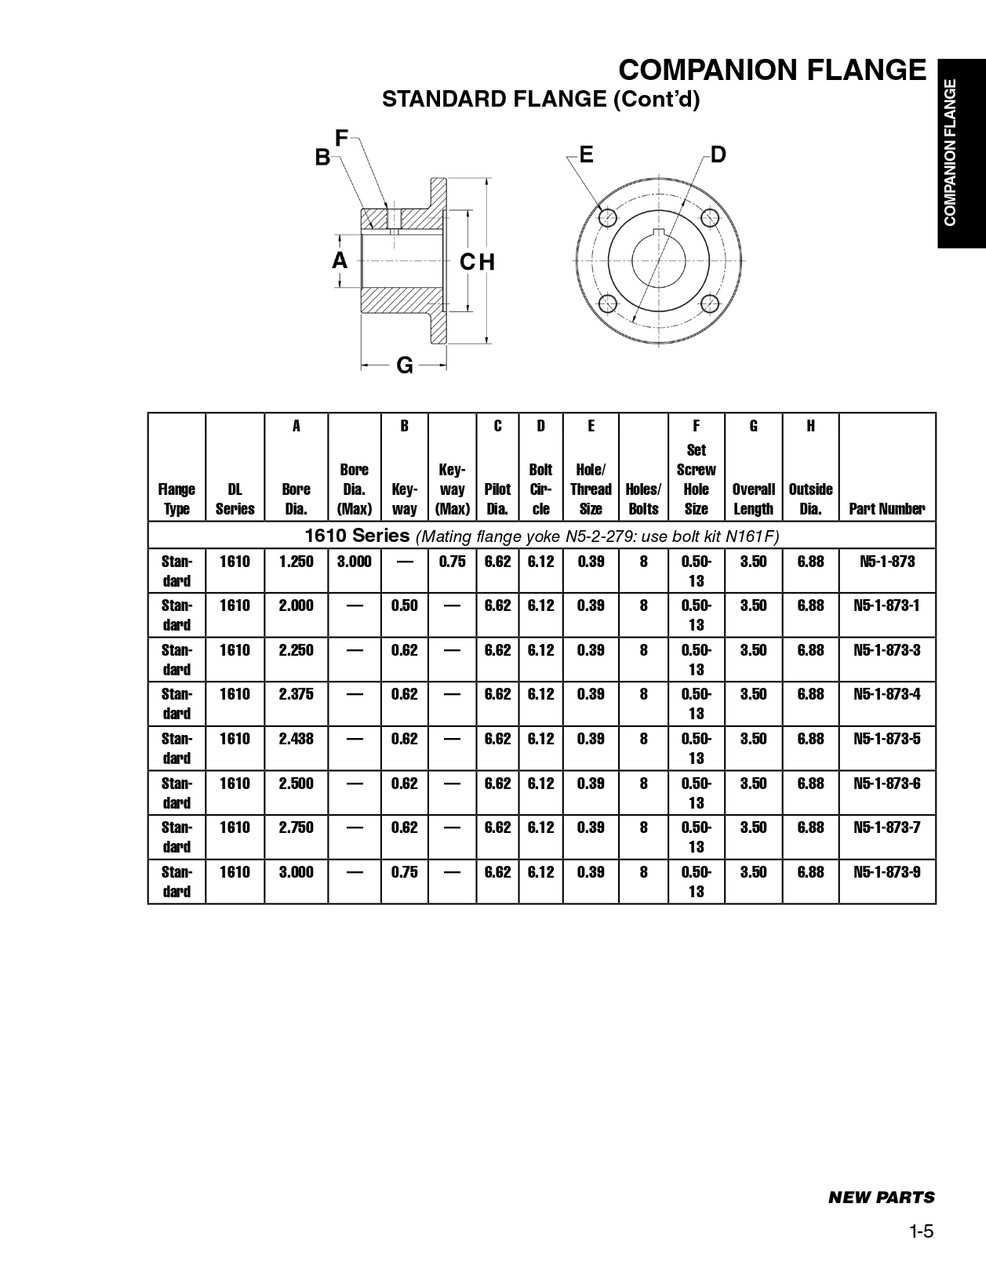 2.438" Round - Spicer® 1610 Series Standard Companion Flange  N5-1-873-5